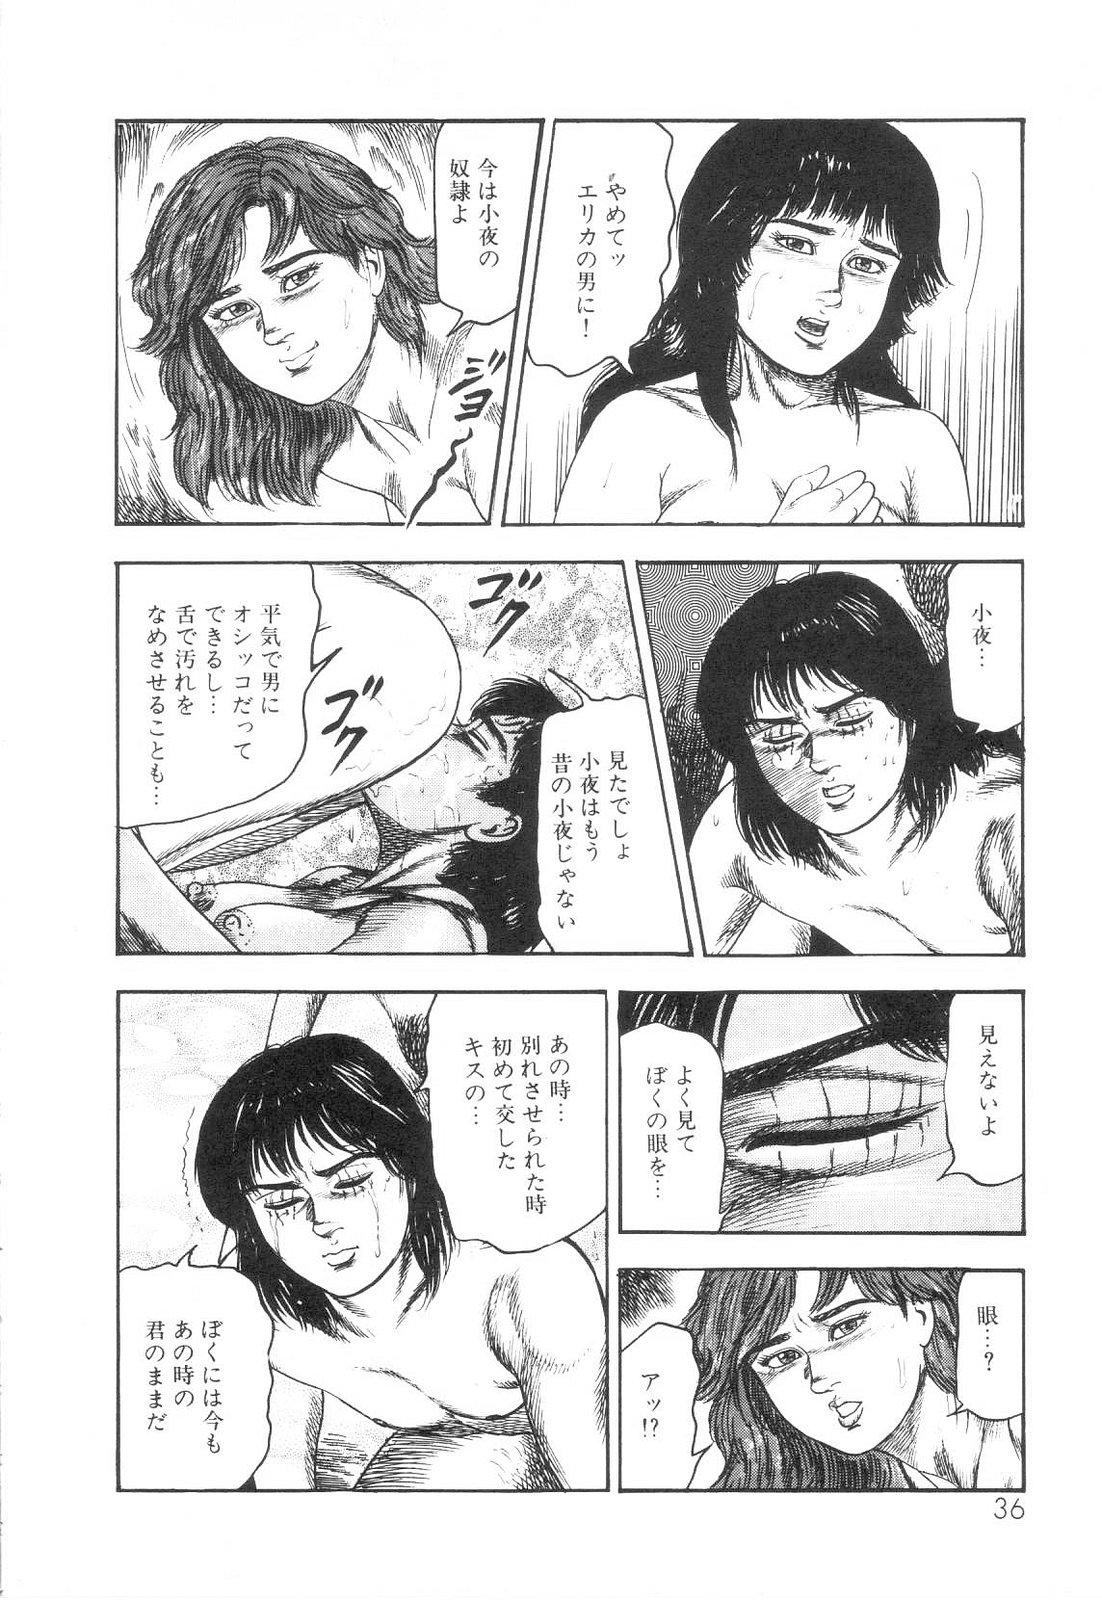 Shiro no Mokushiroku Vol. 6 - Juuai Erika no Shou 36